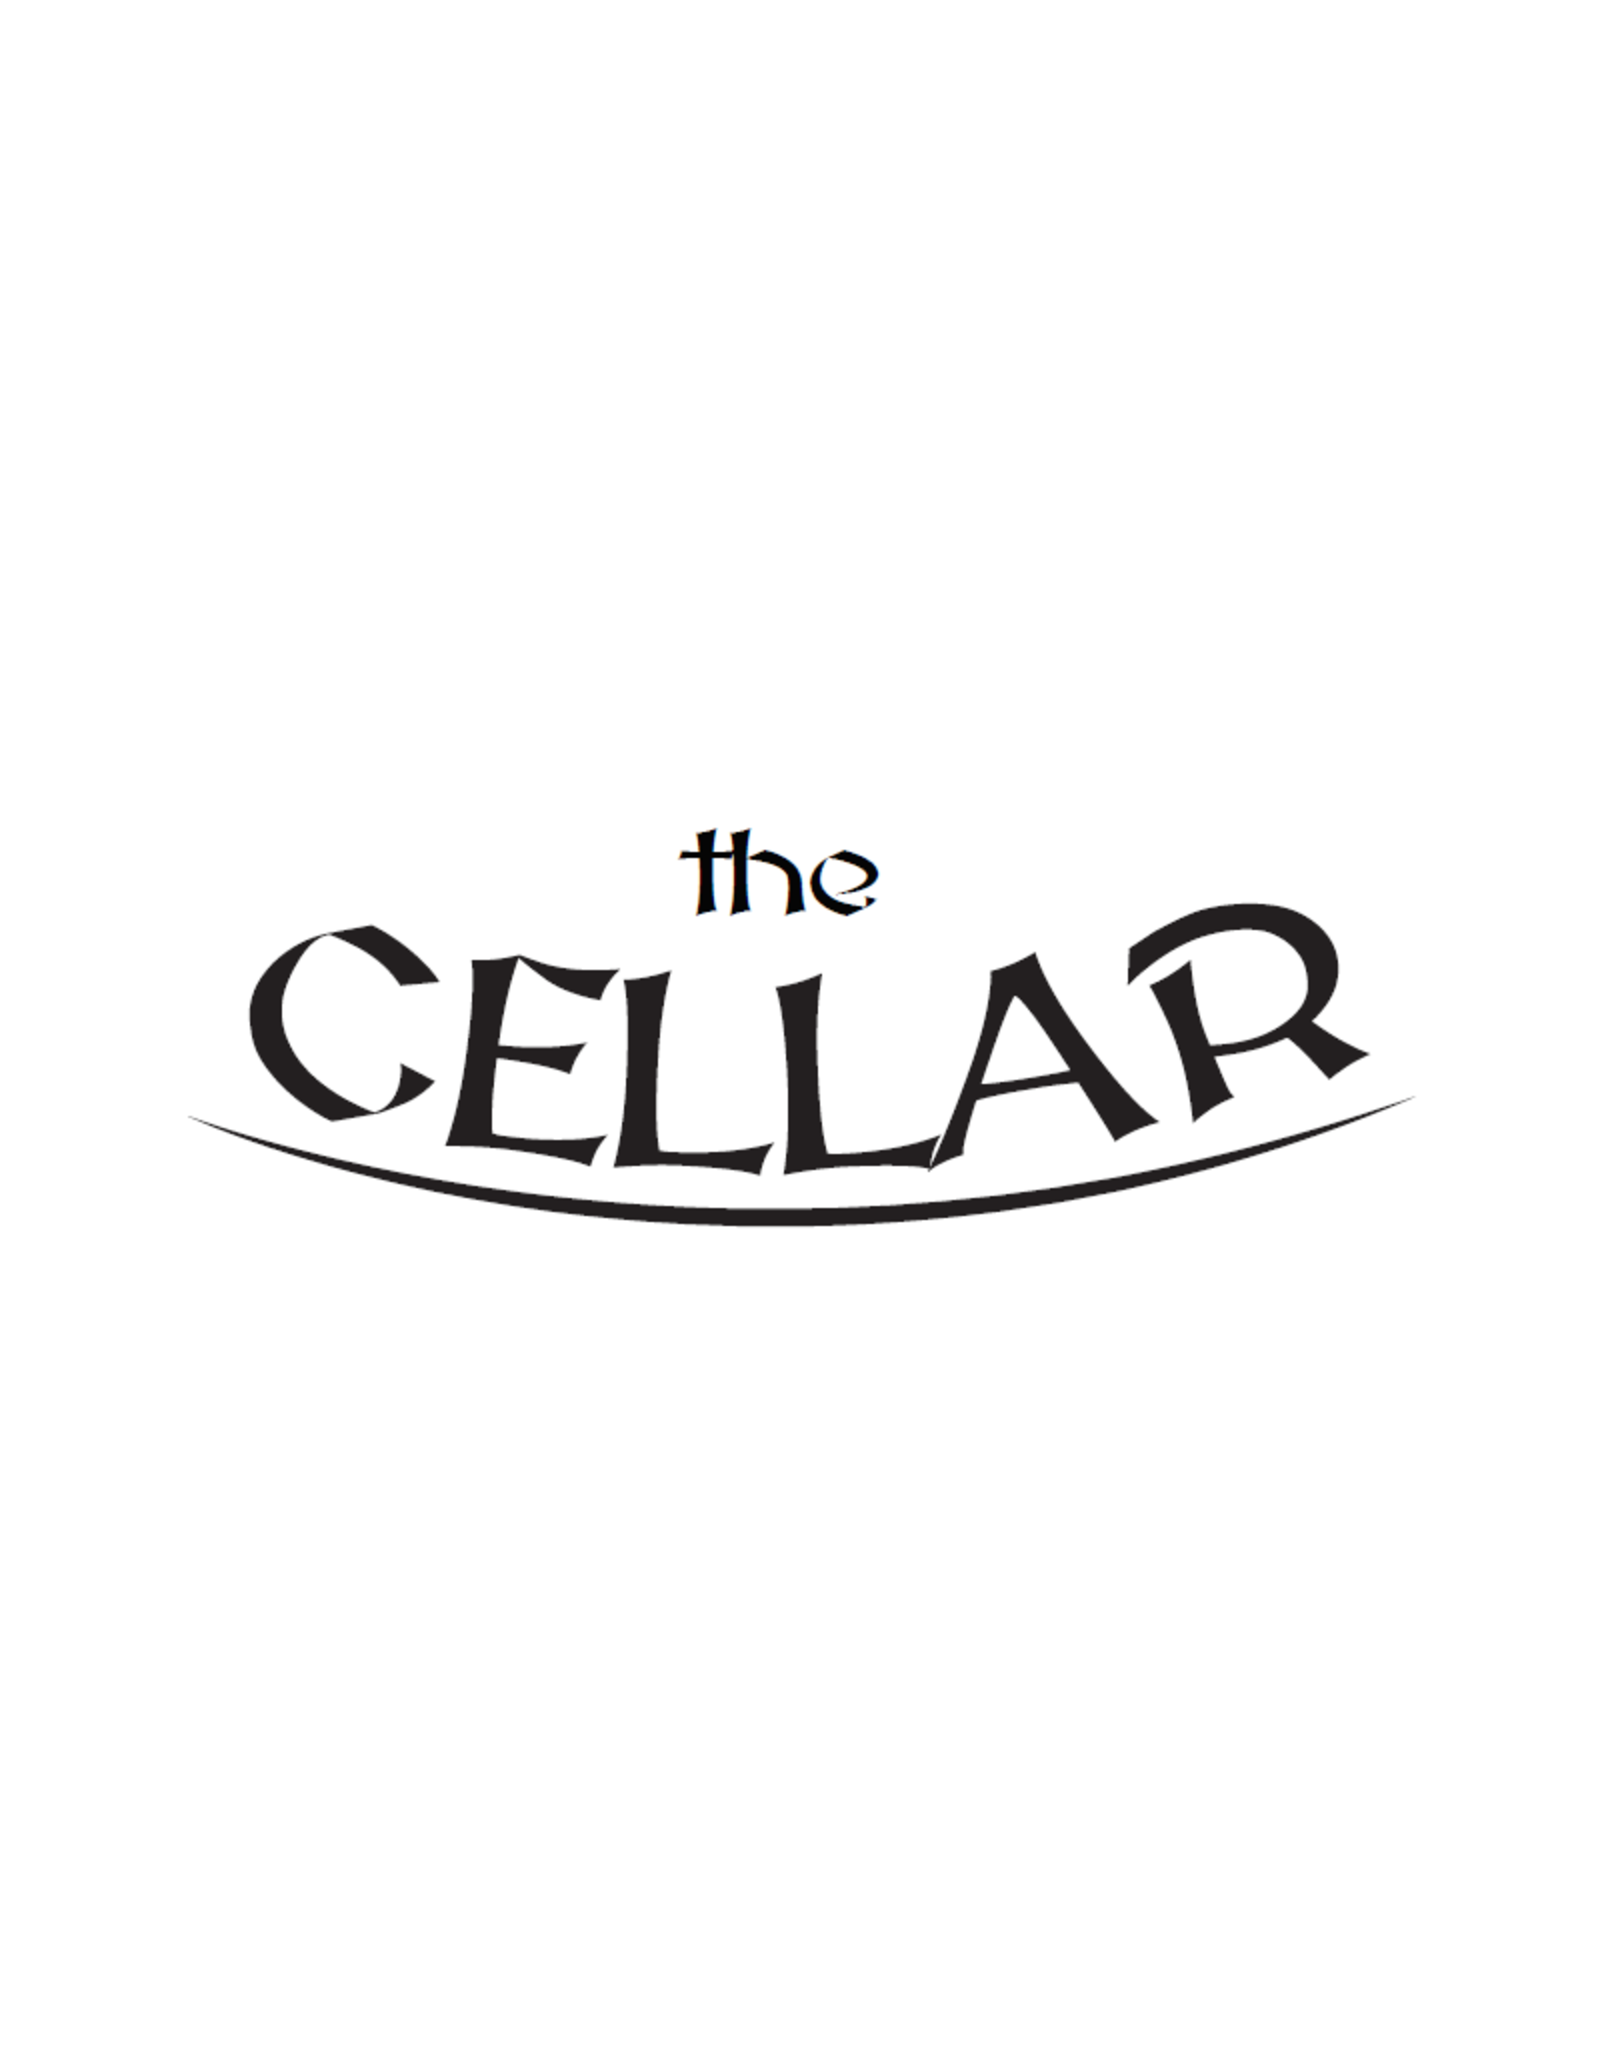 The Cellar Cream Stout Cellar Extract